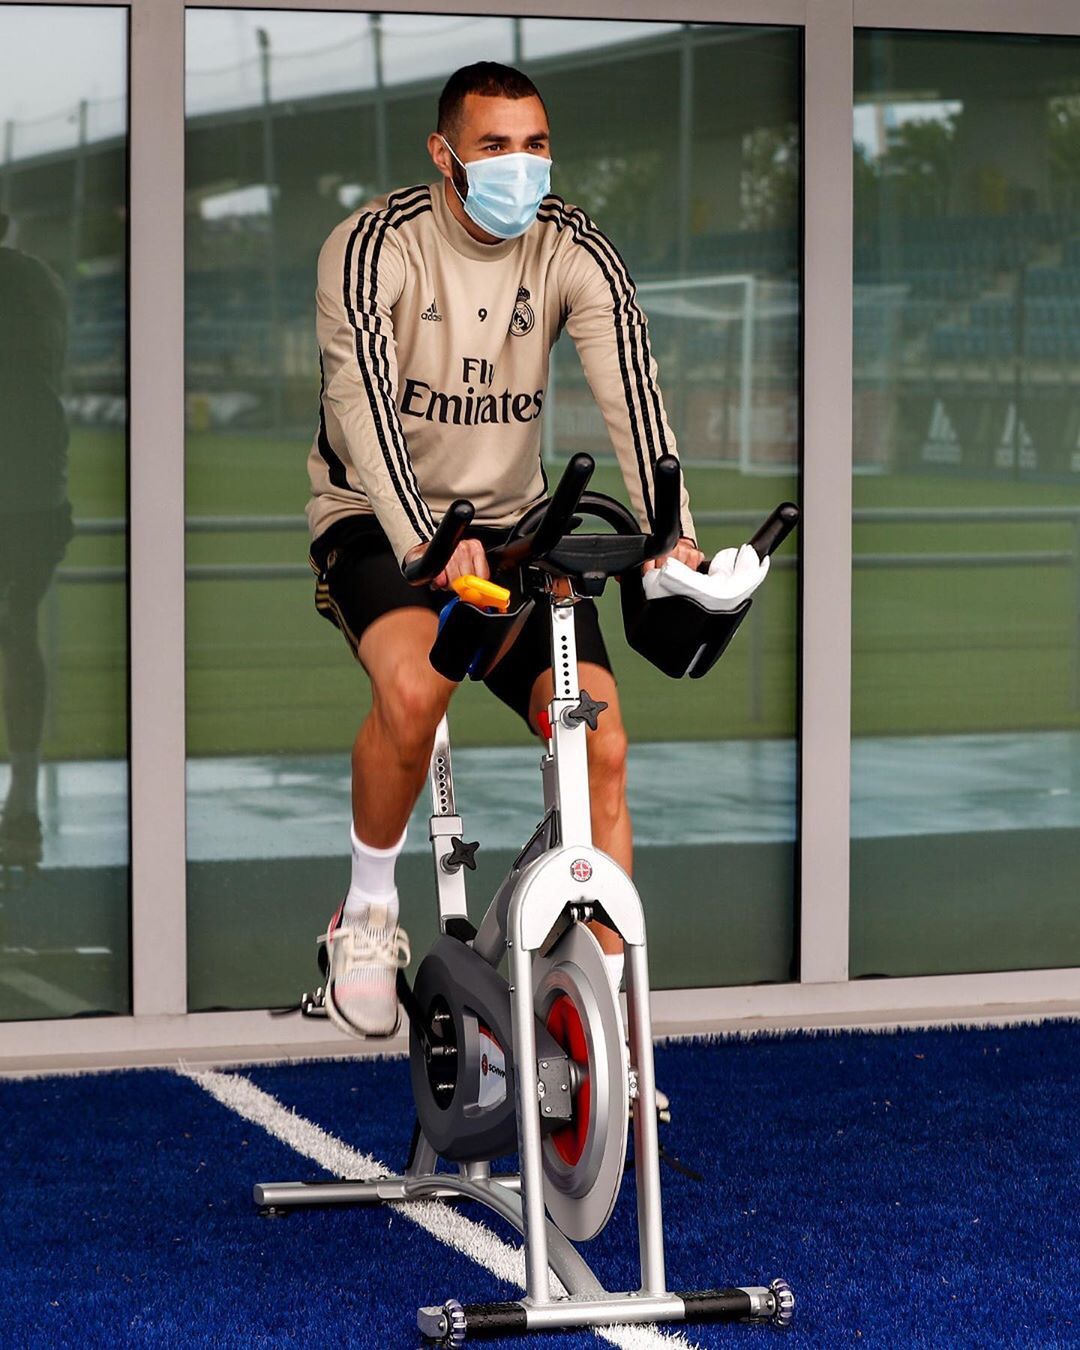 A Real csatára, a francia Karim Benzema szobakerékpározás közben is maszkot visel /Fotó: Instagram